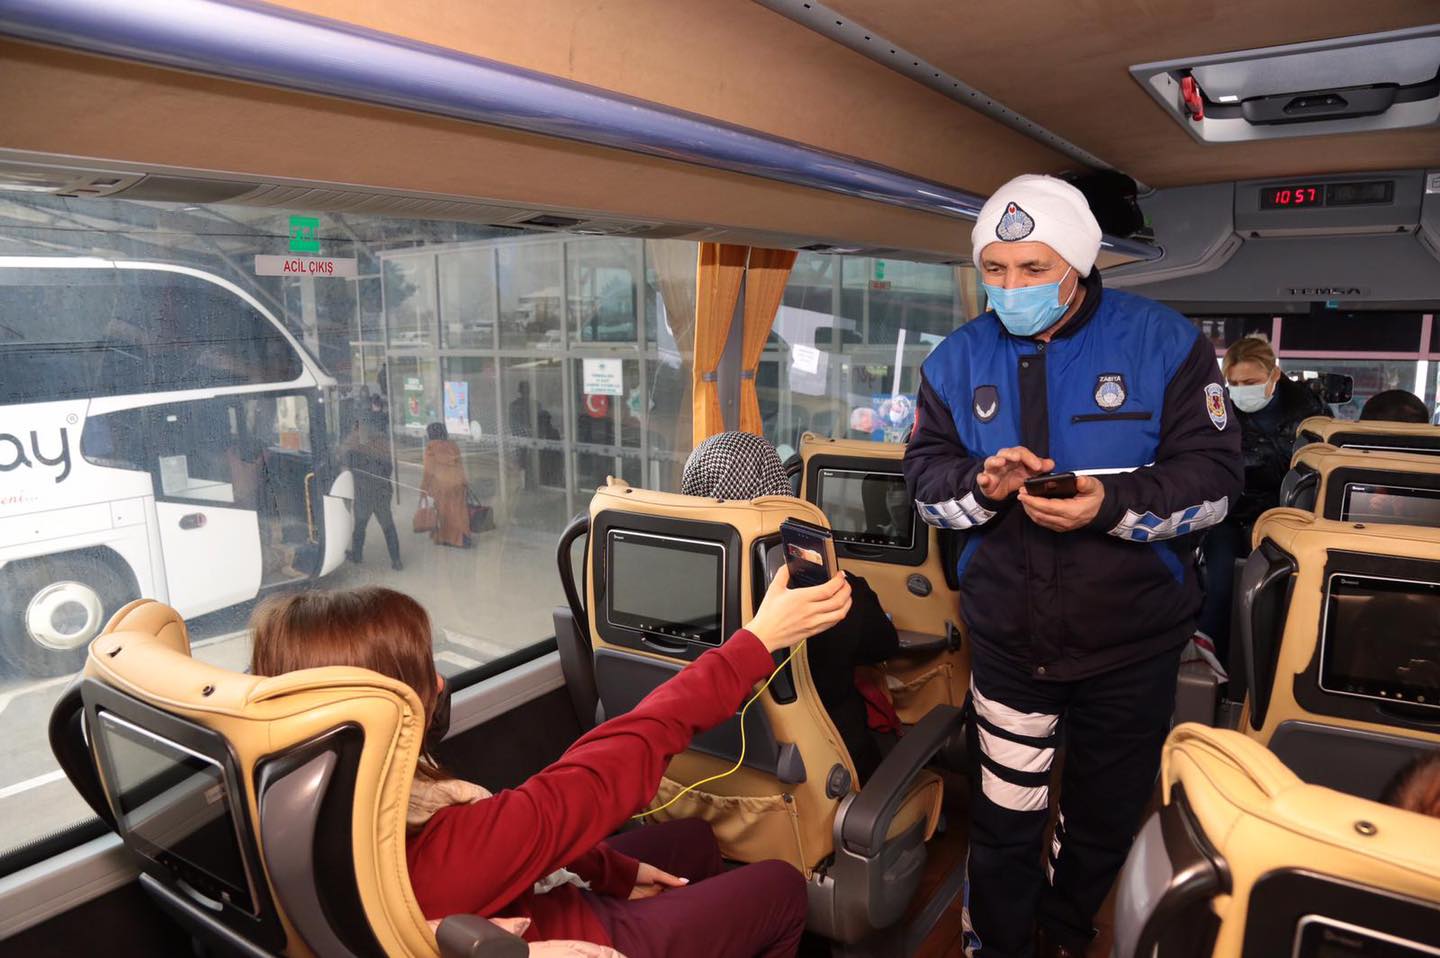 Aksaray'da otobüslerde 'HES' kodu sorgulaması gerçekleştirildi